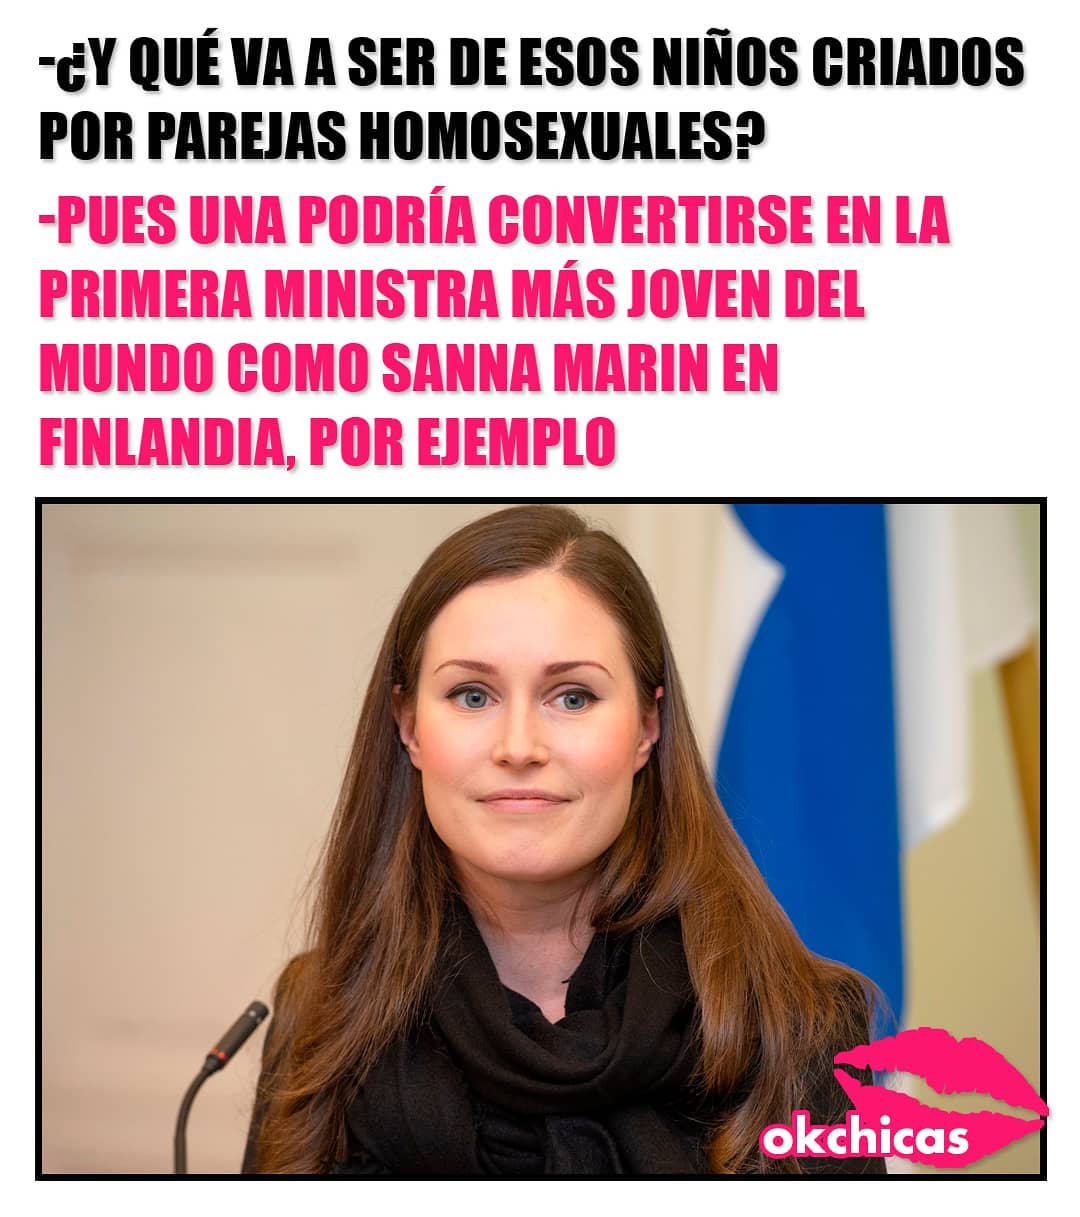 ¿Y qué va a ser de esos criados por parejas homosexuales? Pues una podría convertirse en la primera ministra más joven del mundo como Sanna Marin en Finlandia, por ejemplo.